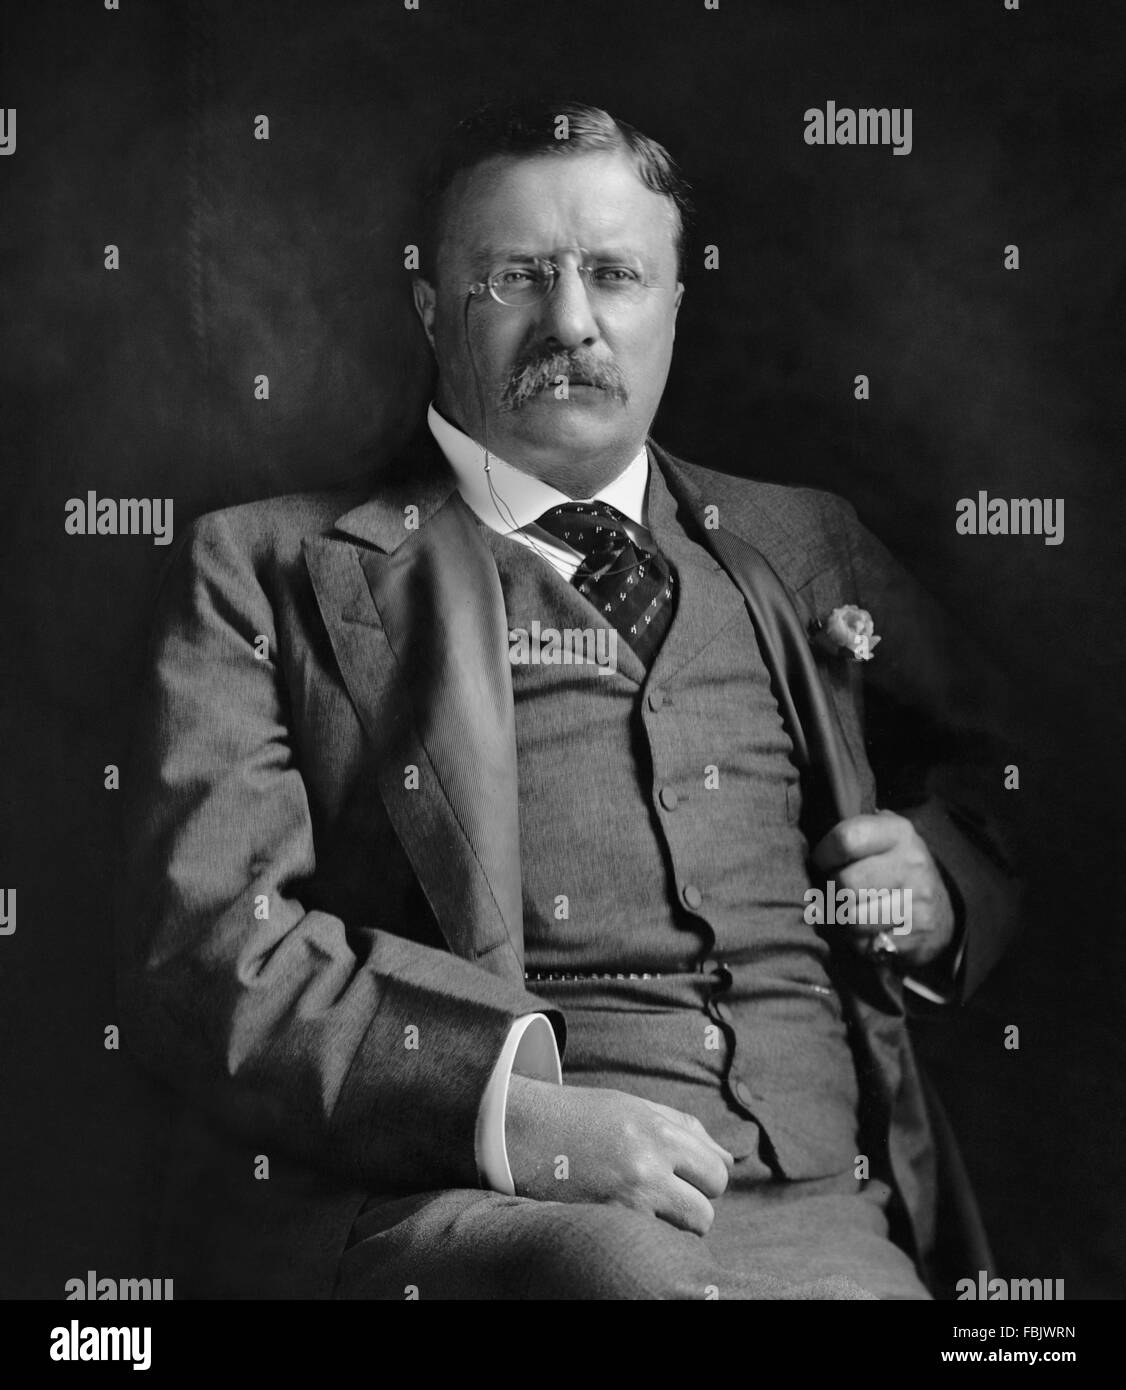 Teddy Roosevelt. Ritratto di Theodore Roosevelt, il 26th° presidente degli Stati Uniti, c.1907 Foto Stock